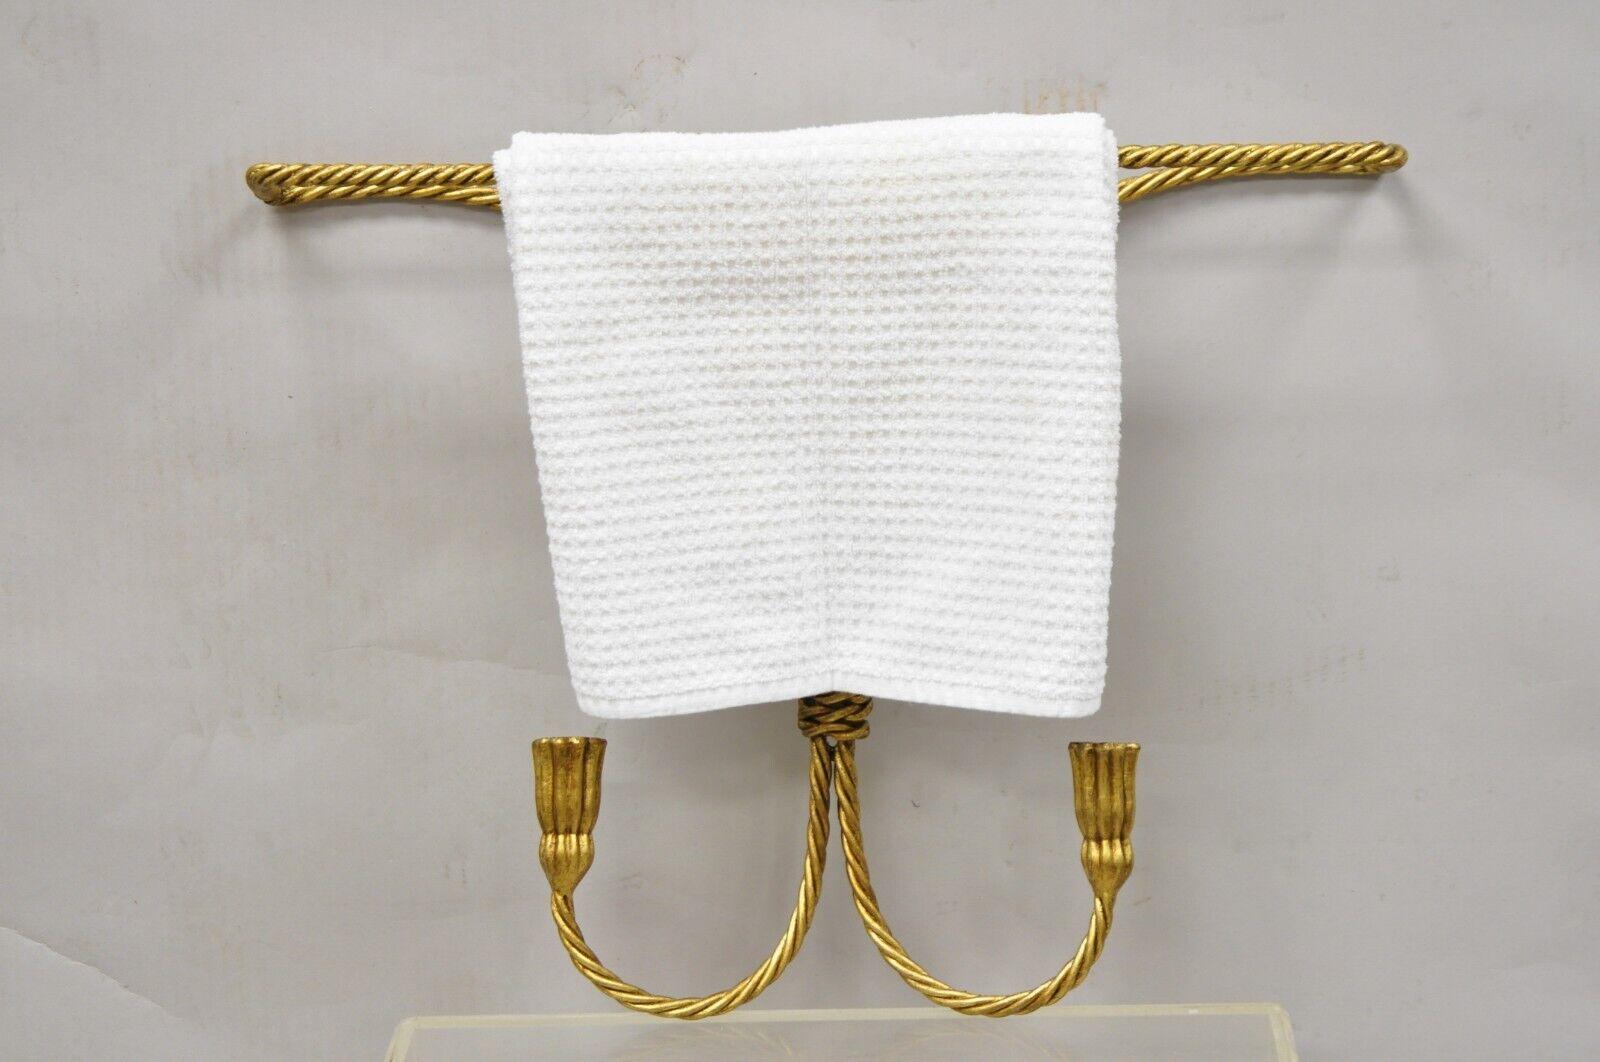 Vintage Italian Hollywood Regency Gold Gilt Iron Wall Mount Rope Tassel Towel Rod Bar Holder. L'article se caractérise par une corde et un gland en fer, un seul porte-serviettes, un design mural, un très bel article vintage, un artisanat italien de